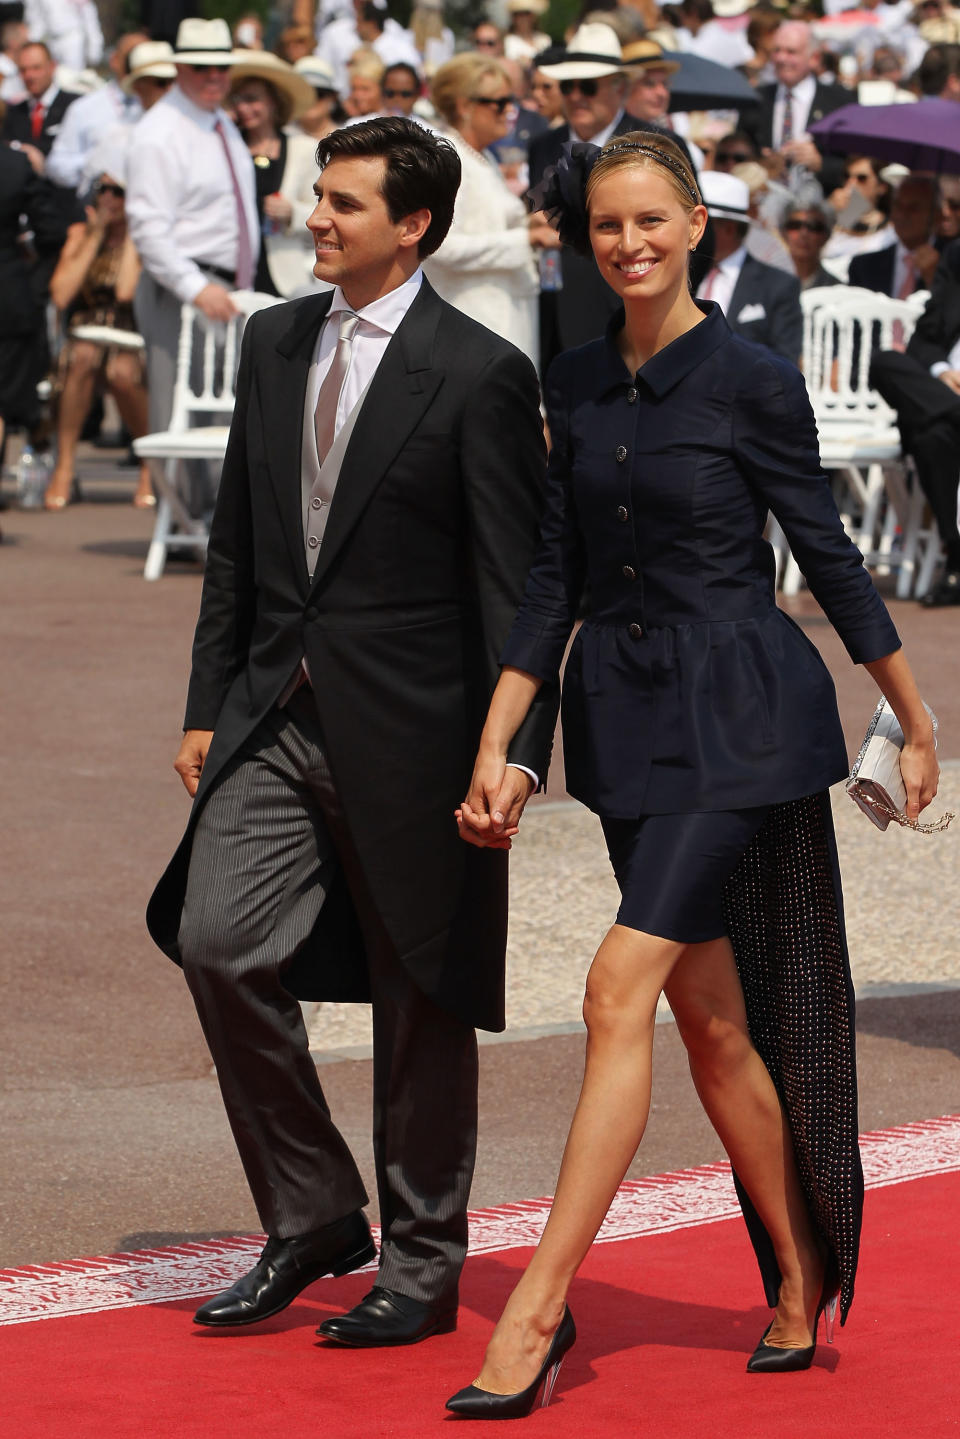 <p>La supermodelo checa, al igual que varios miembros de la familia real de Mónaco, acudió a la boda vestida de Chanel. Aunque su diseño era bastante original, no consiguió estar entre las invitadas mejor vestidas. (Foto: Sean Gallup / Getty Images)</p> 